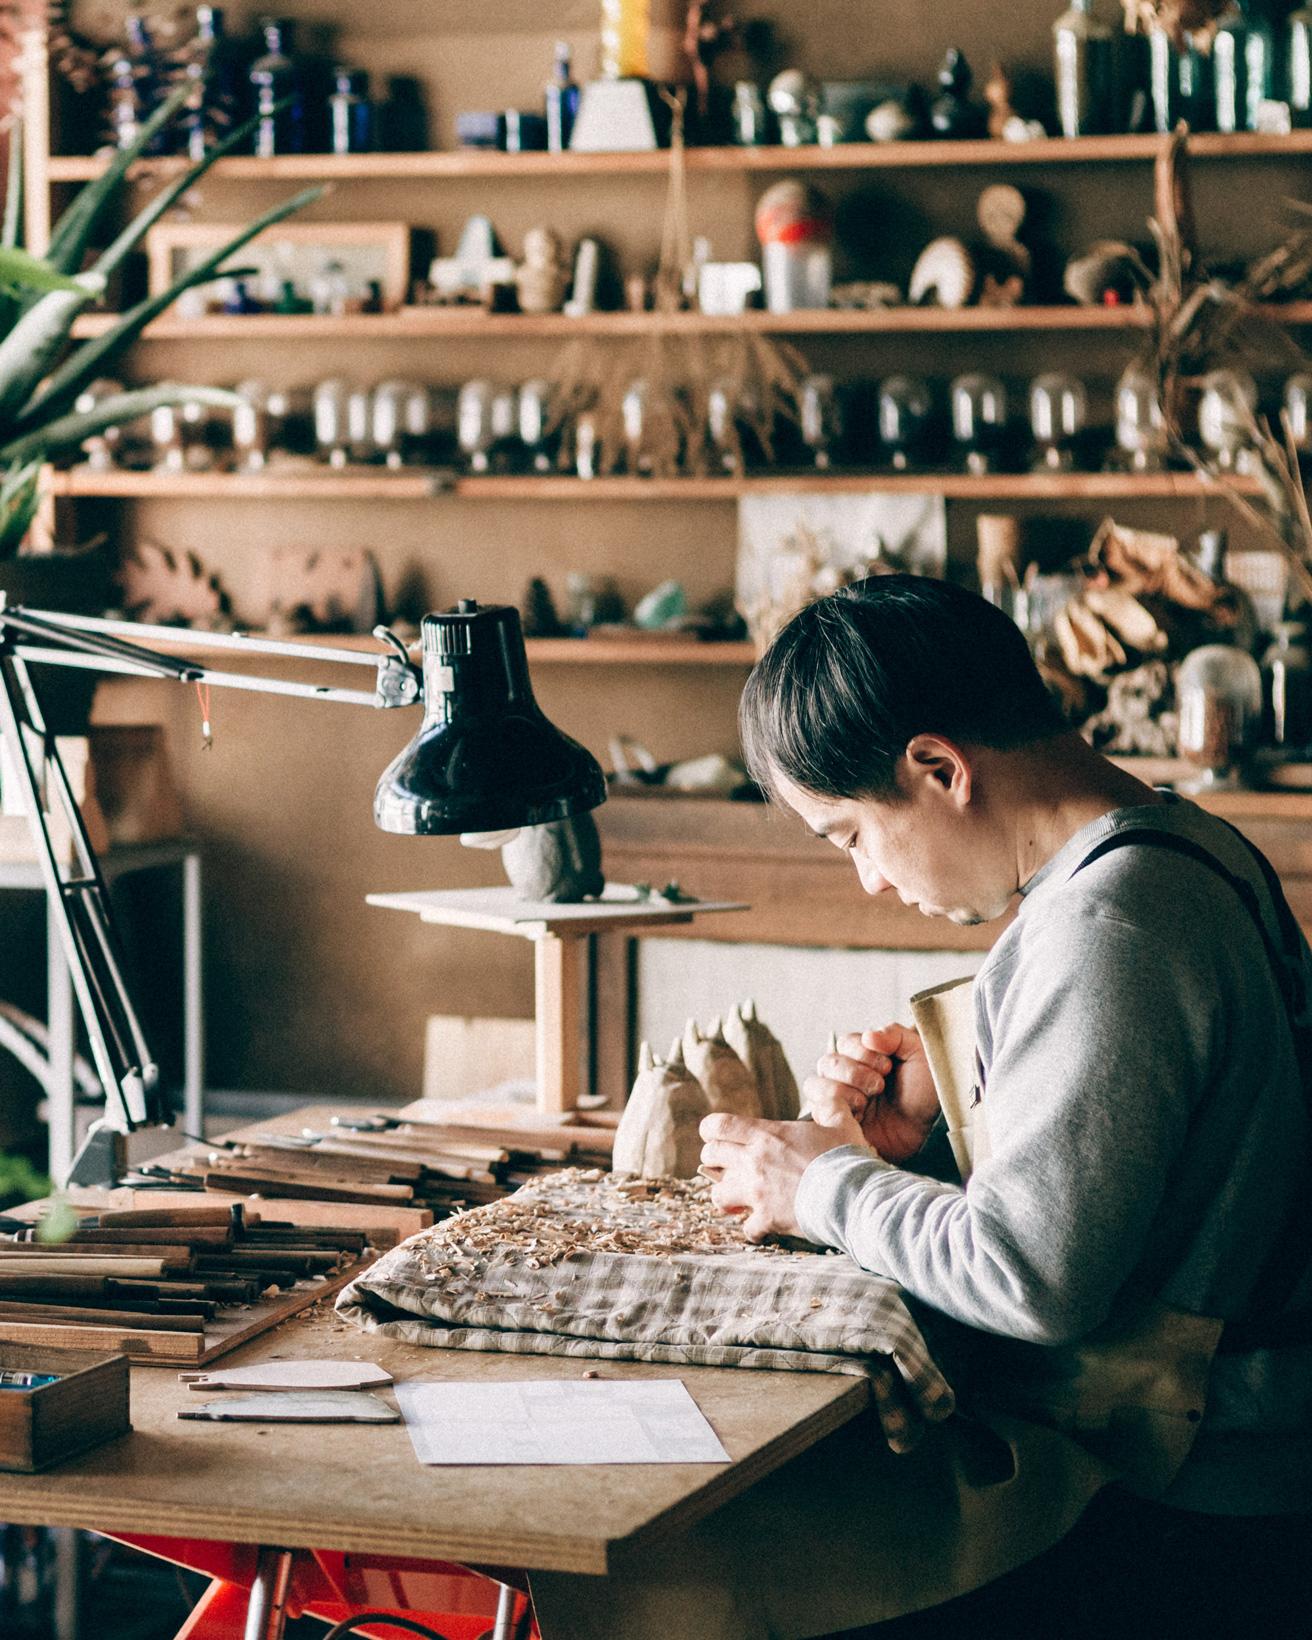 井波彫刻、木彫と漆の工房『トモル工房』で木彫りのトトロを制作中の田中孝明さん。 